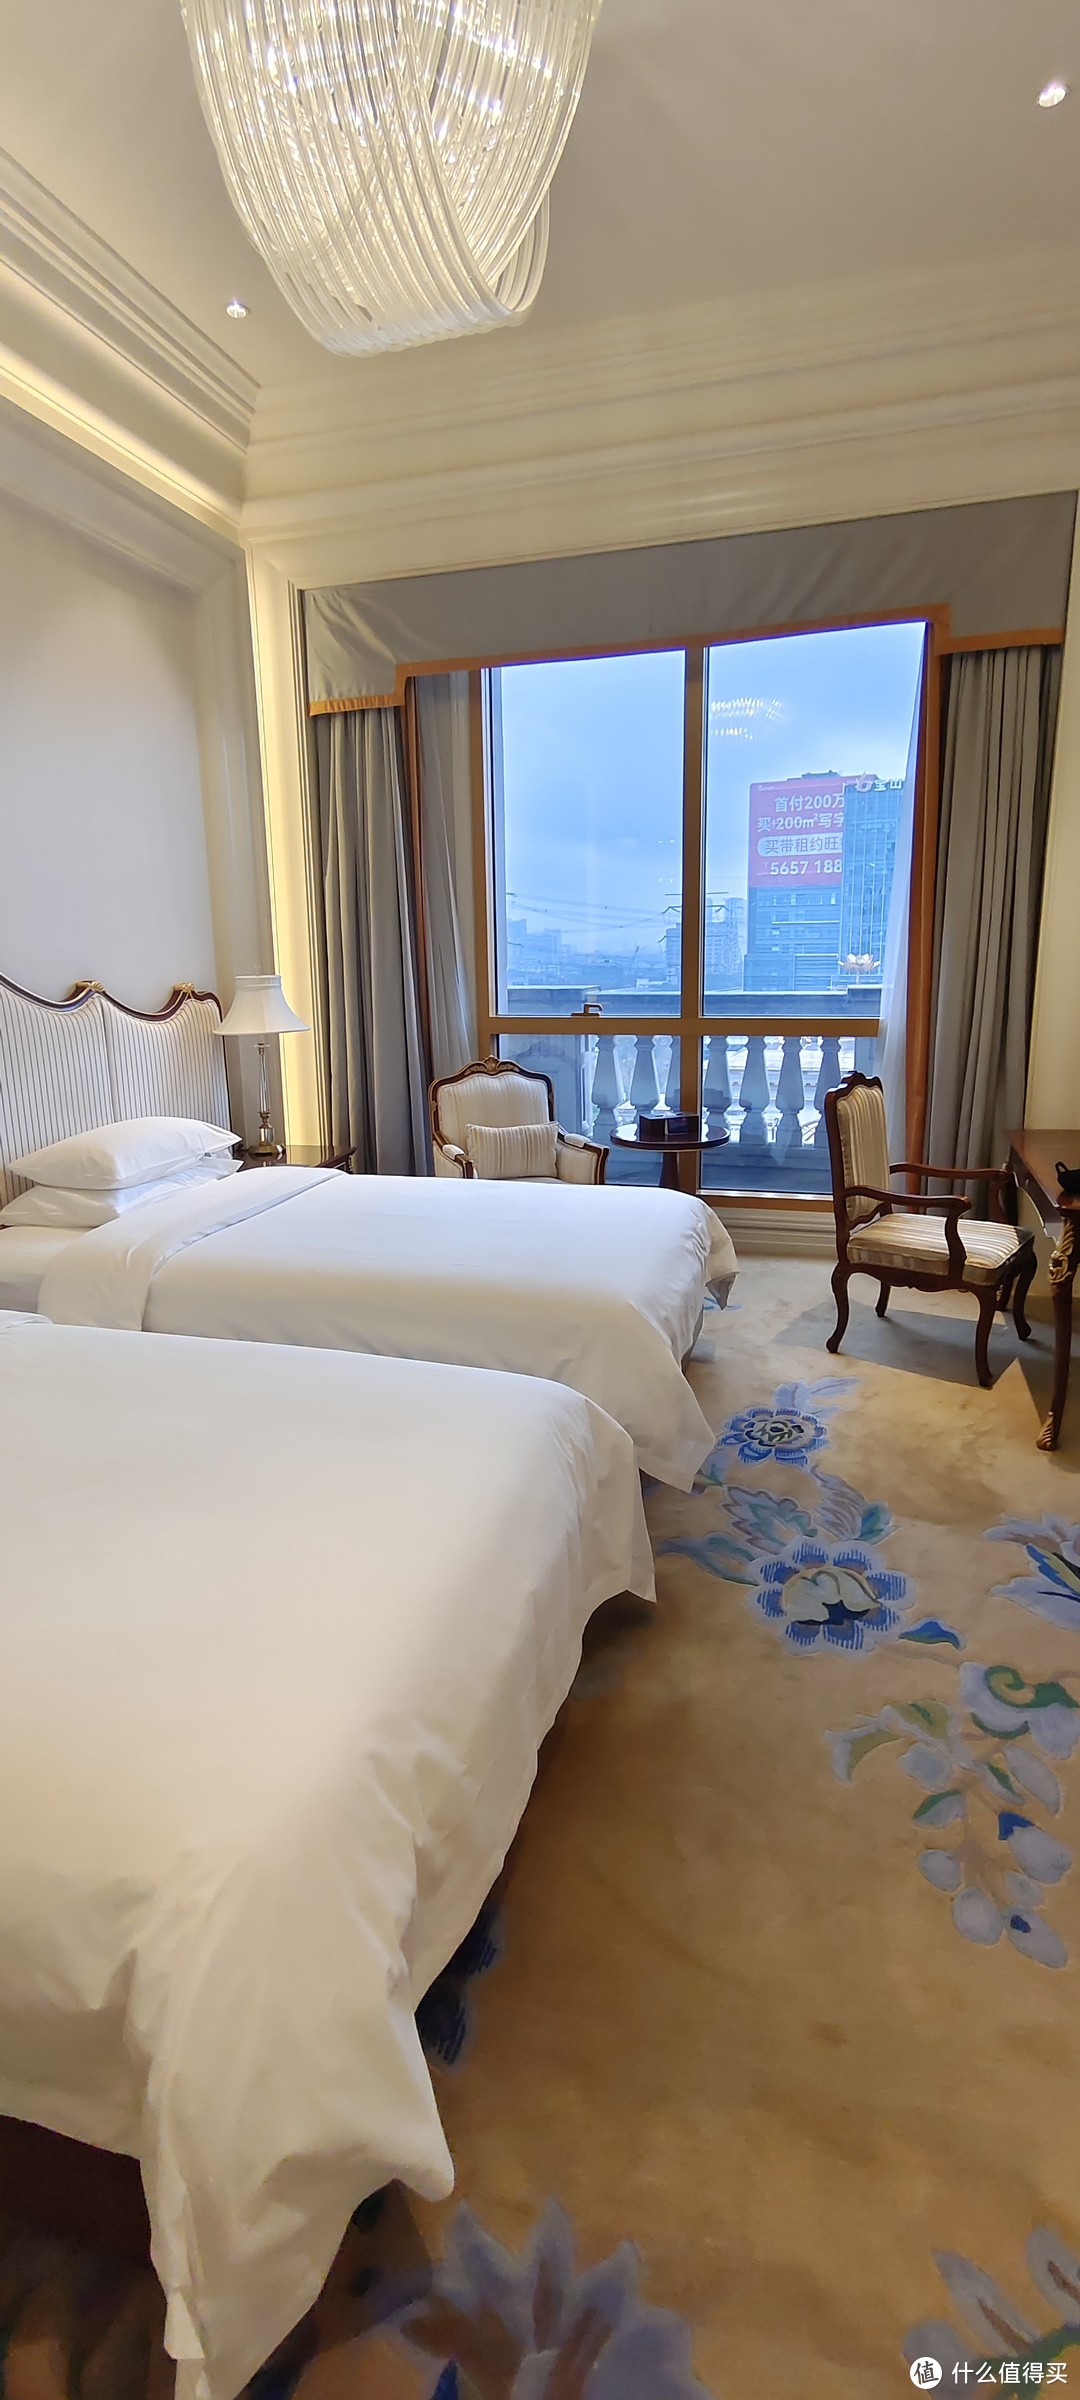 上海宝山德尔塔城堡酒店/万豪双子星之德尔塔酒店入住体验/欧式风格很出片/古堡风格大堂满满贵族气息典雅